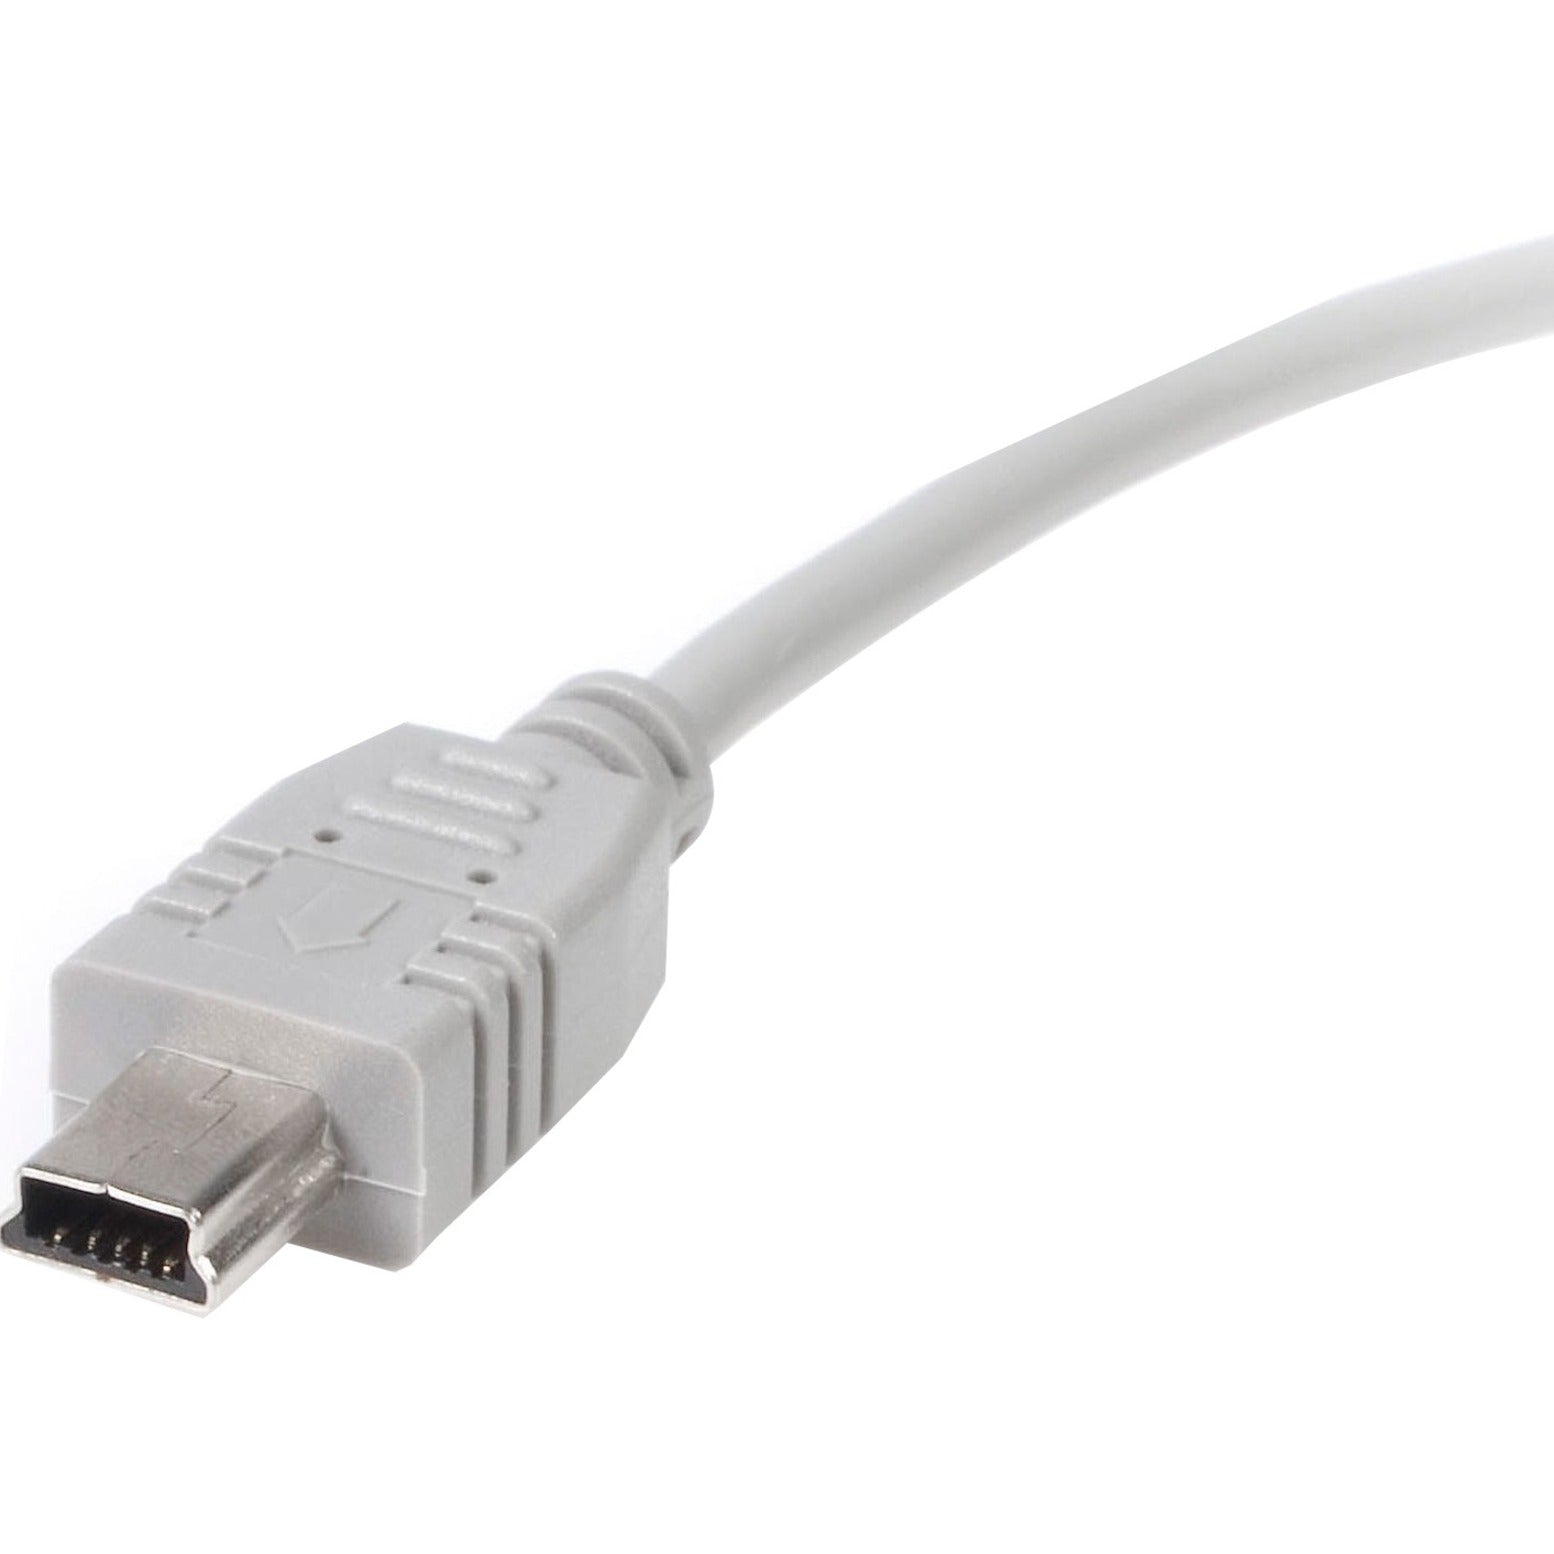 StarTech.com USB2HABM3 3 ft Mini USB 2.0 Kabel - A zu Mini B